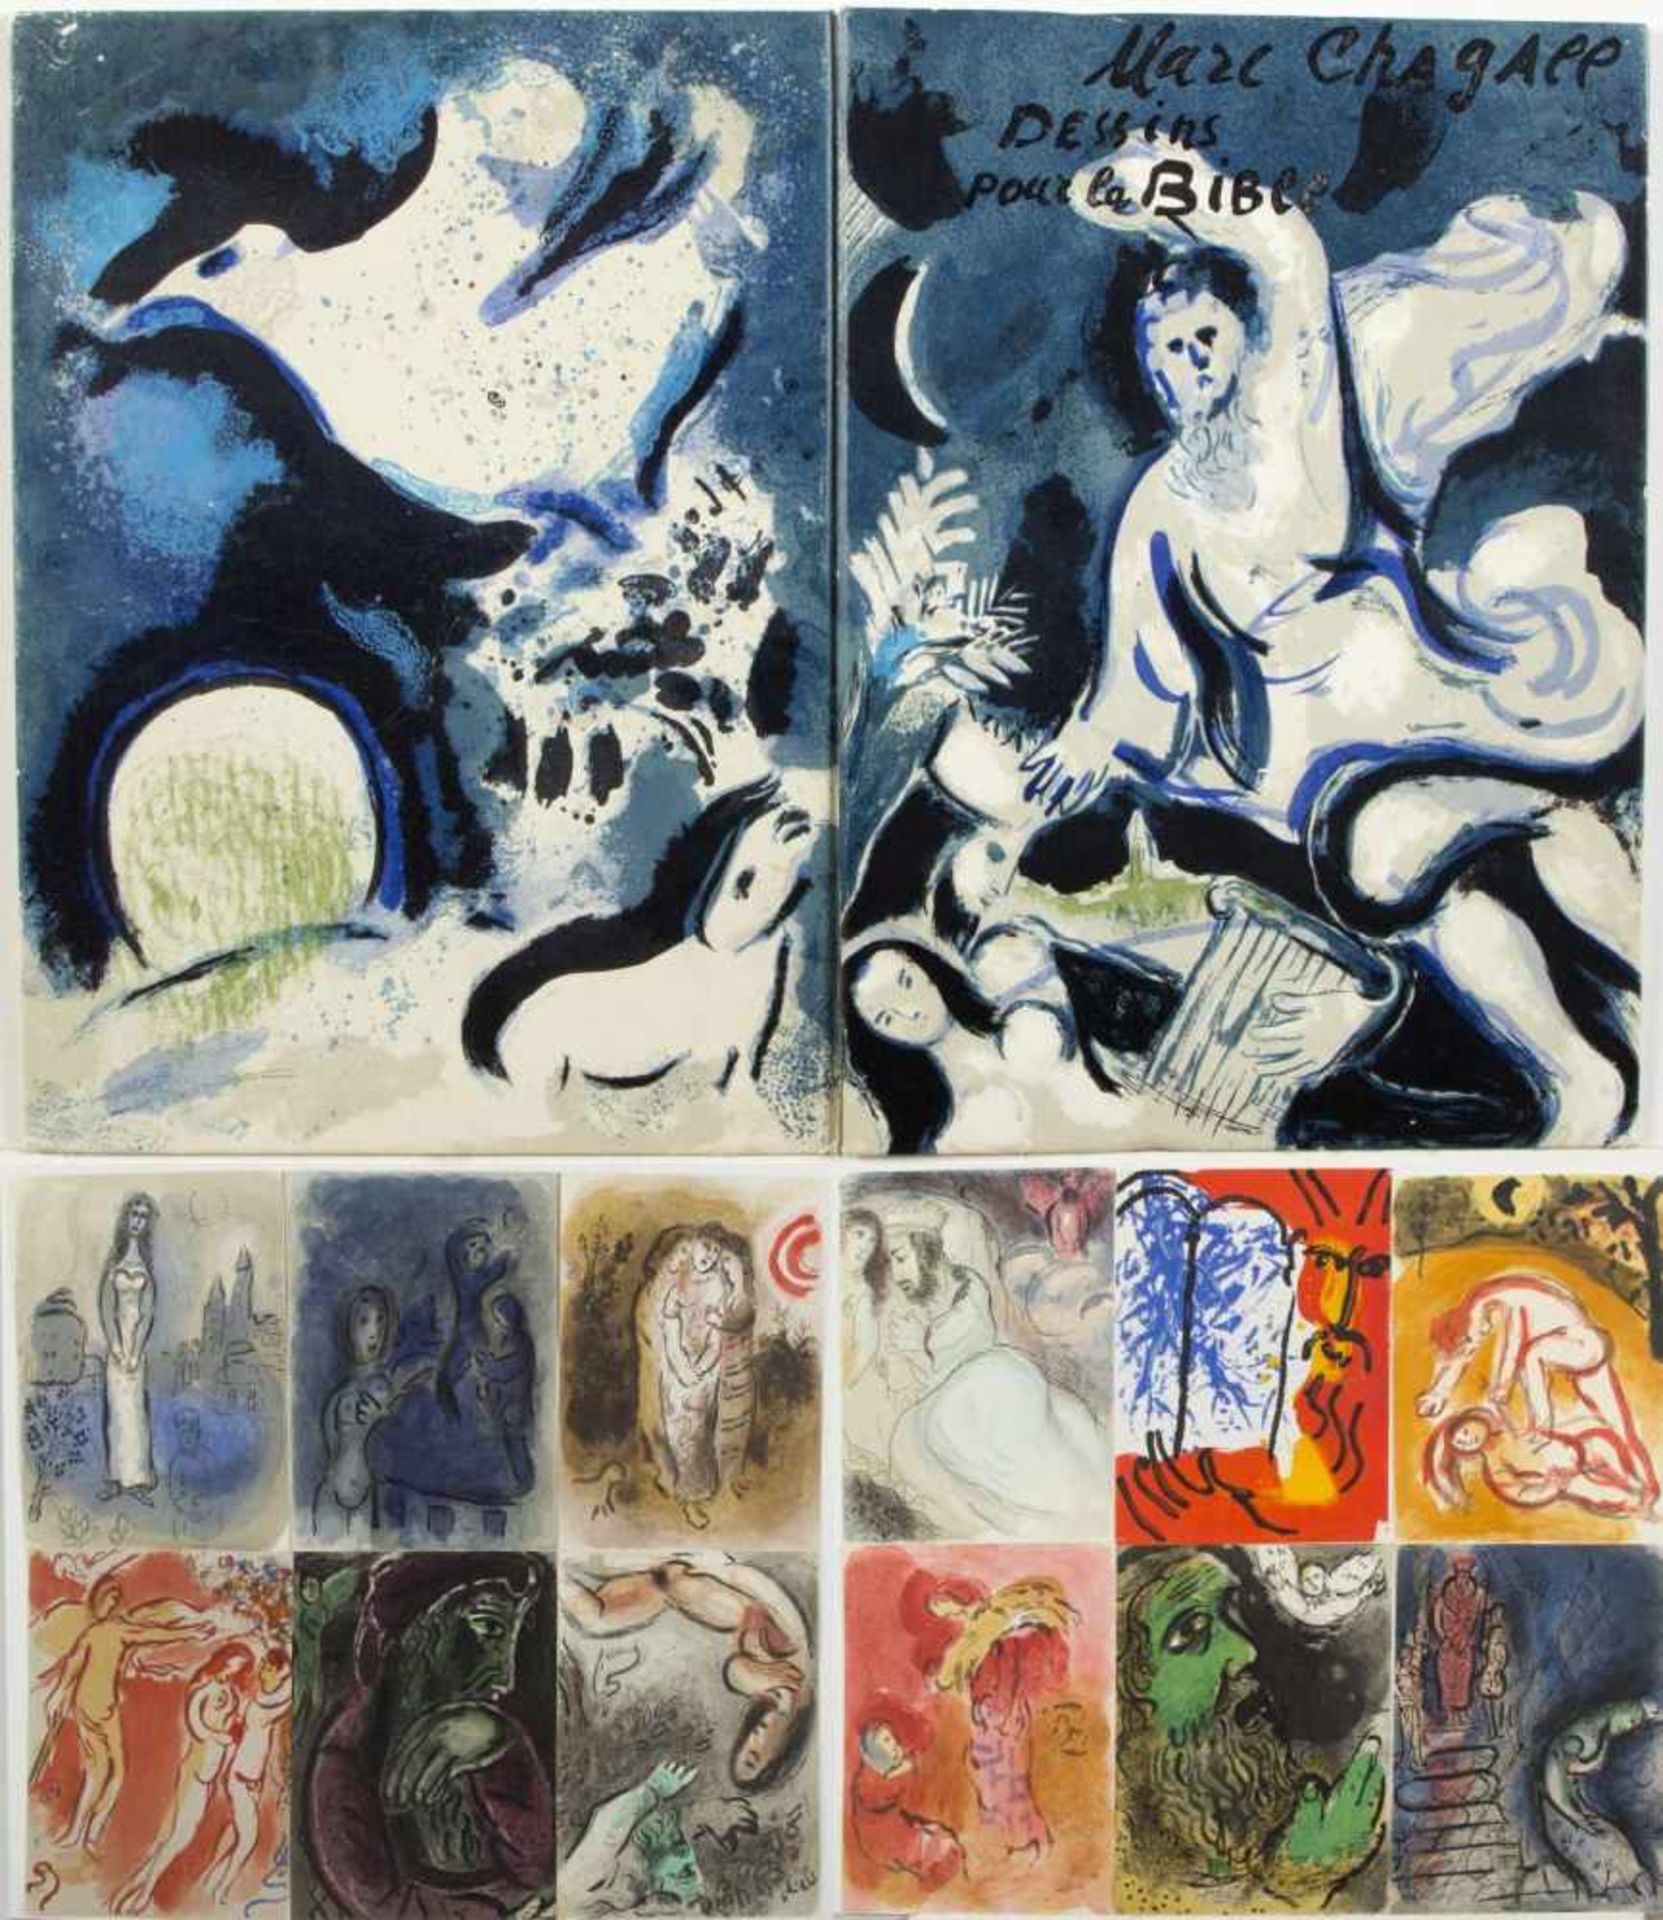 Chagall, Marc. 1887 Witebsk - Paul de Vence 1985Dessins pour la bible. 19 lose Farblithographien und